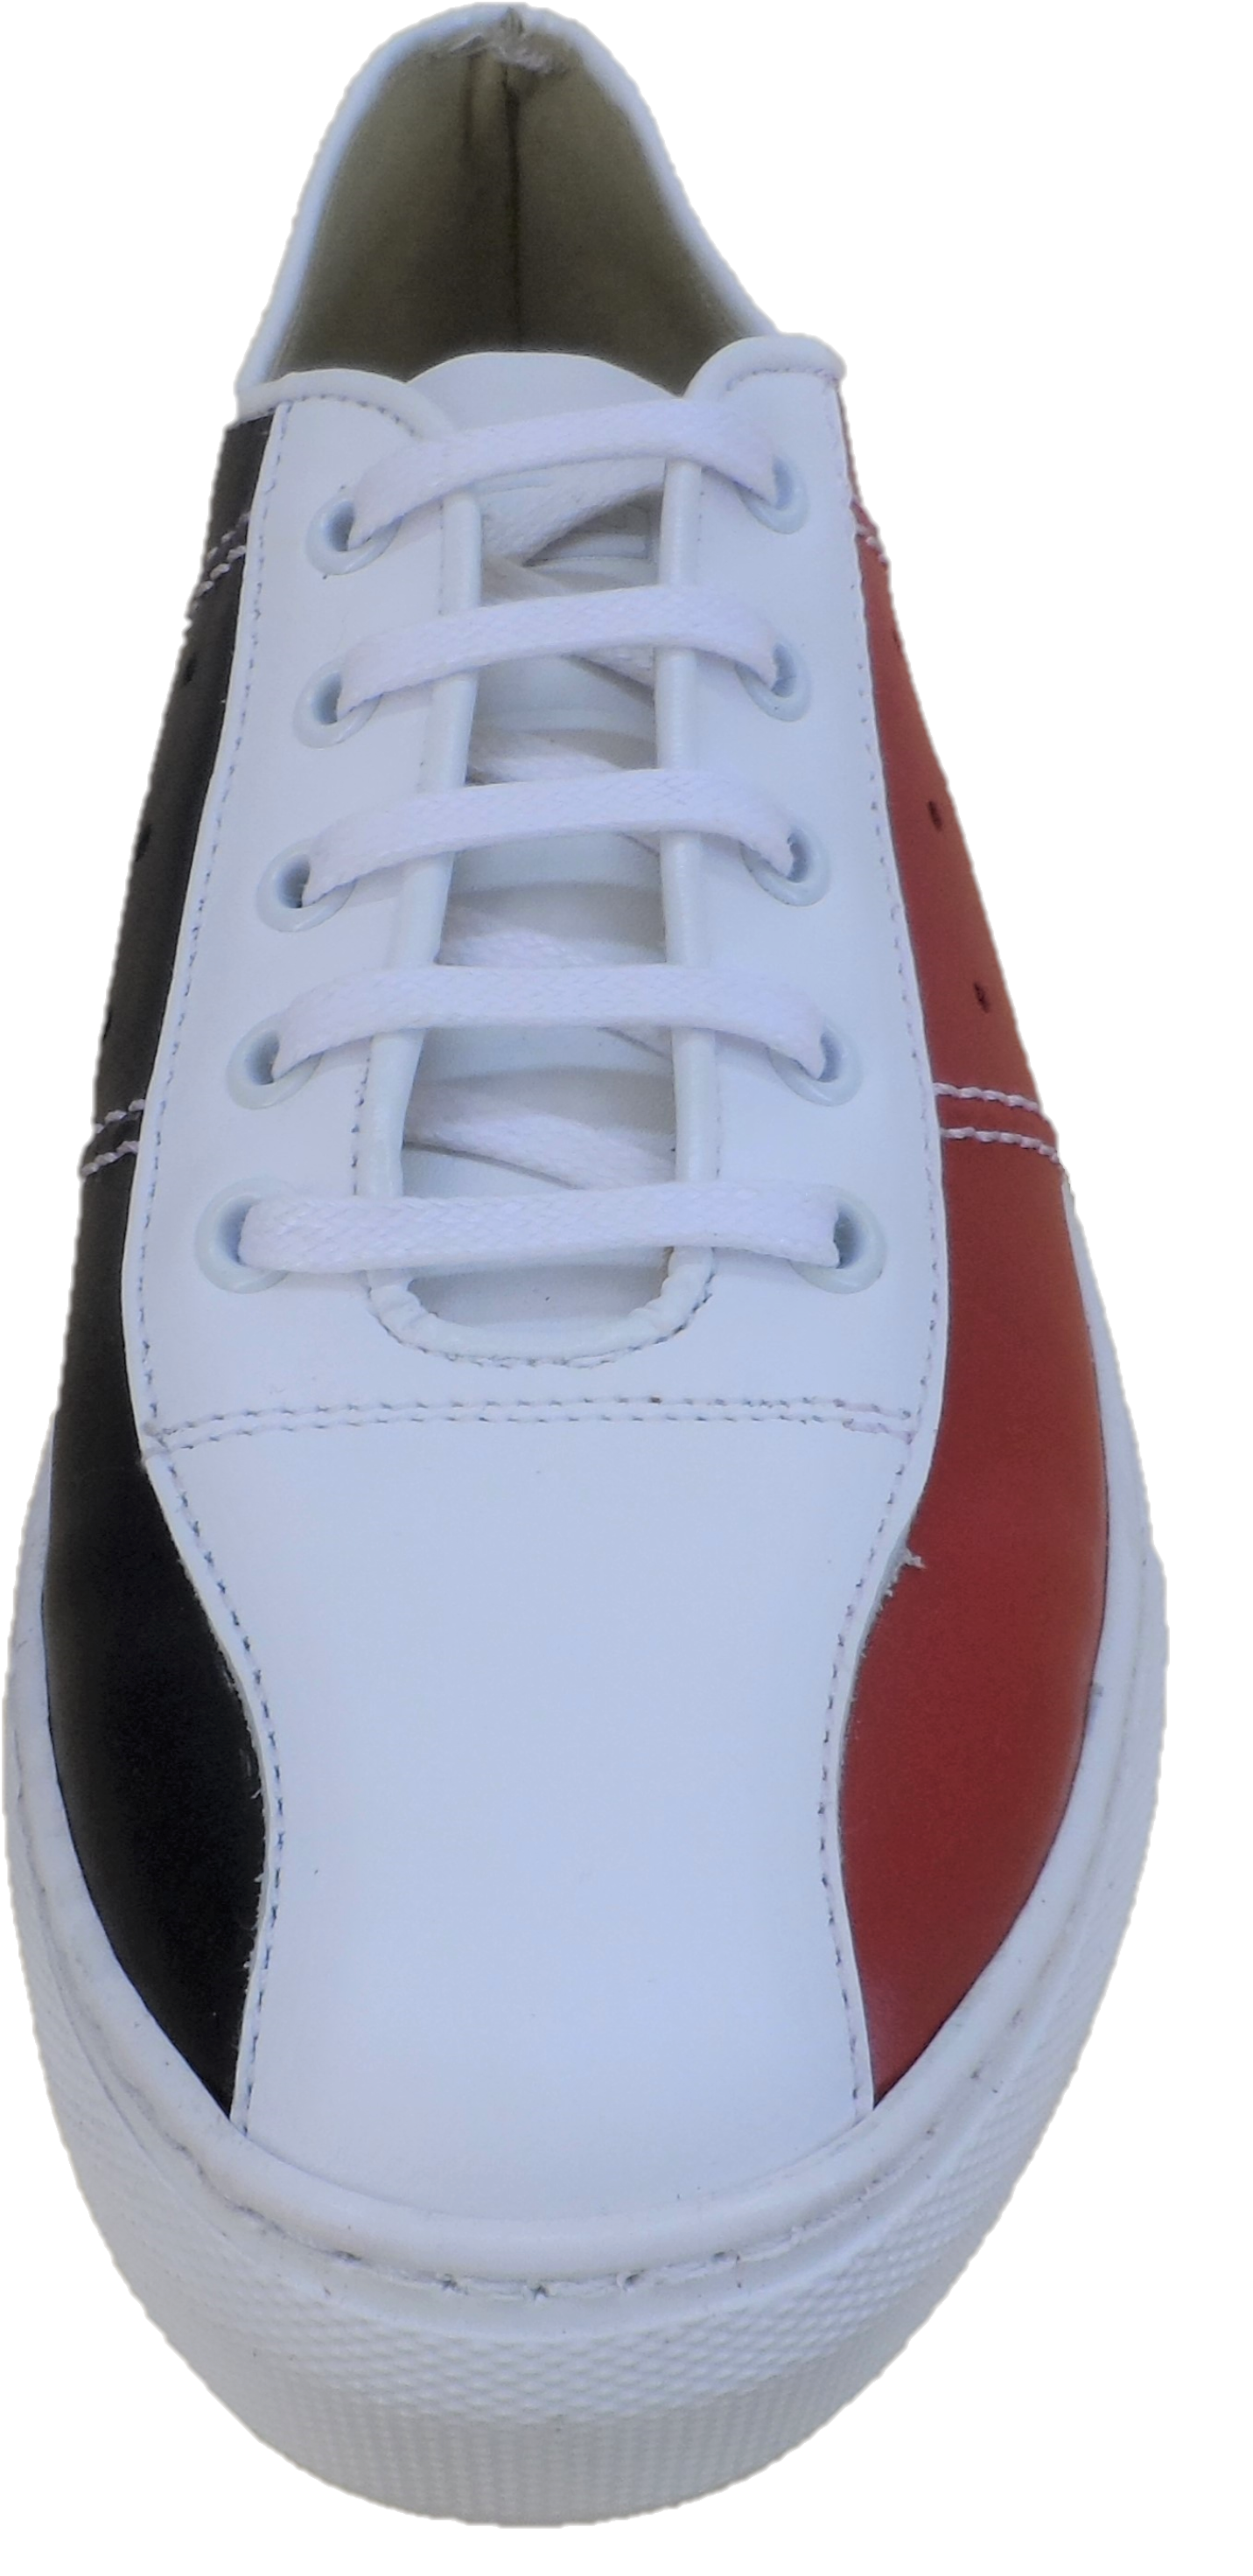 Ikon Original da uomo, scarpe da ginnastica da bowling rosse, bianche e blu The Seeker